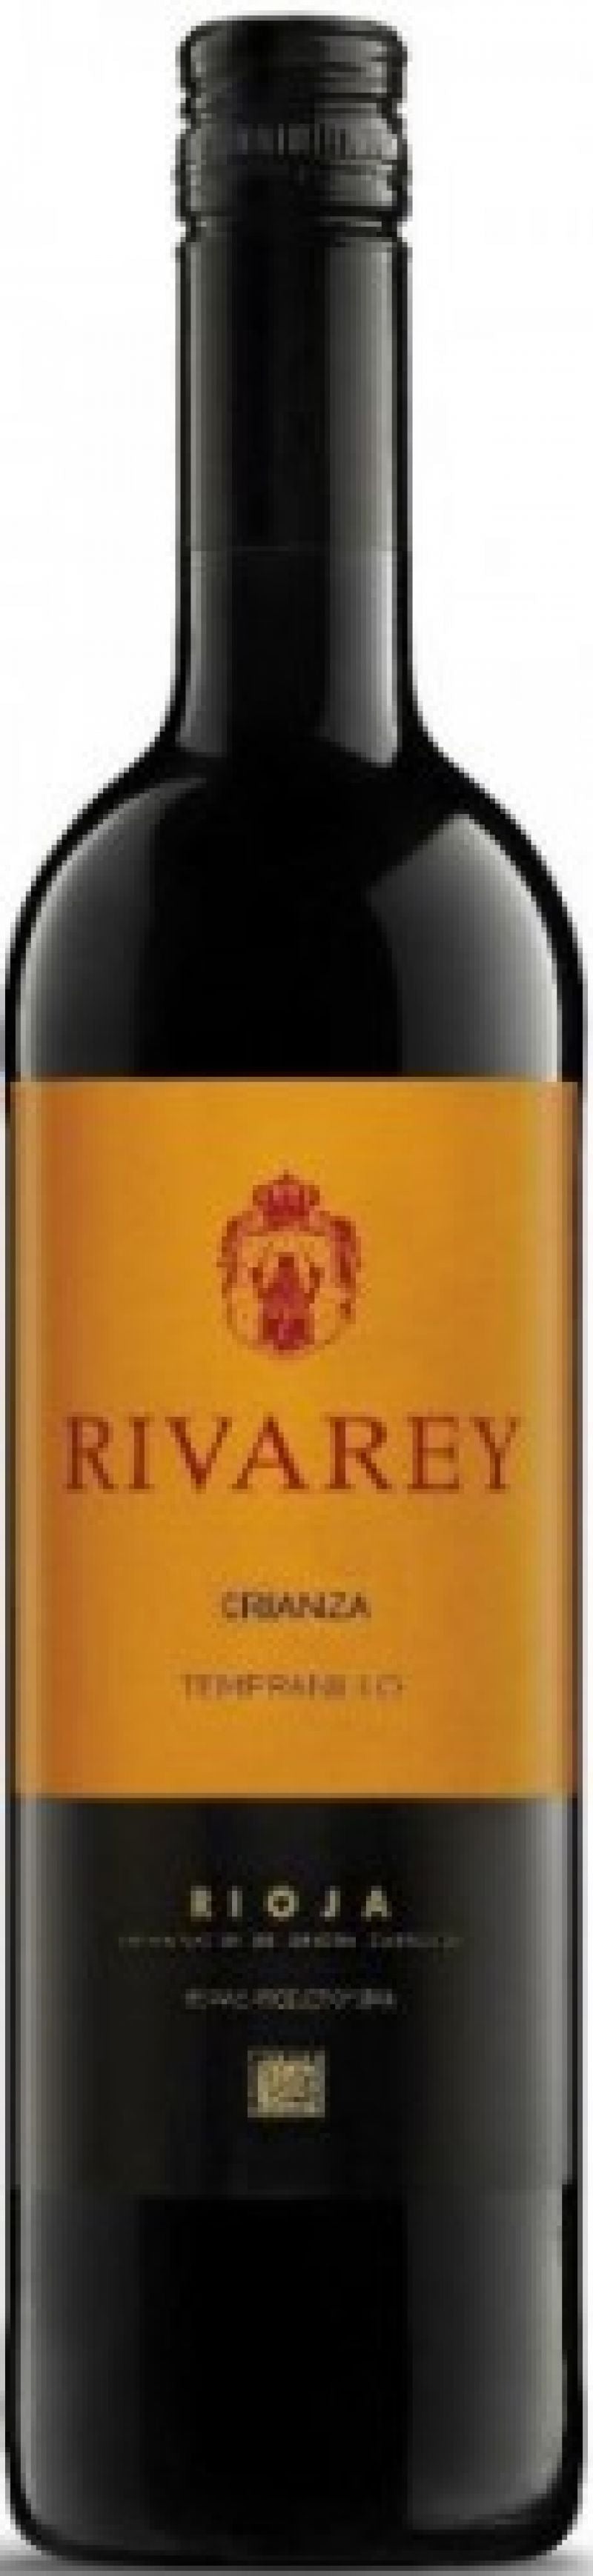 Rivarey Rioja Crianza 2015